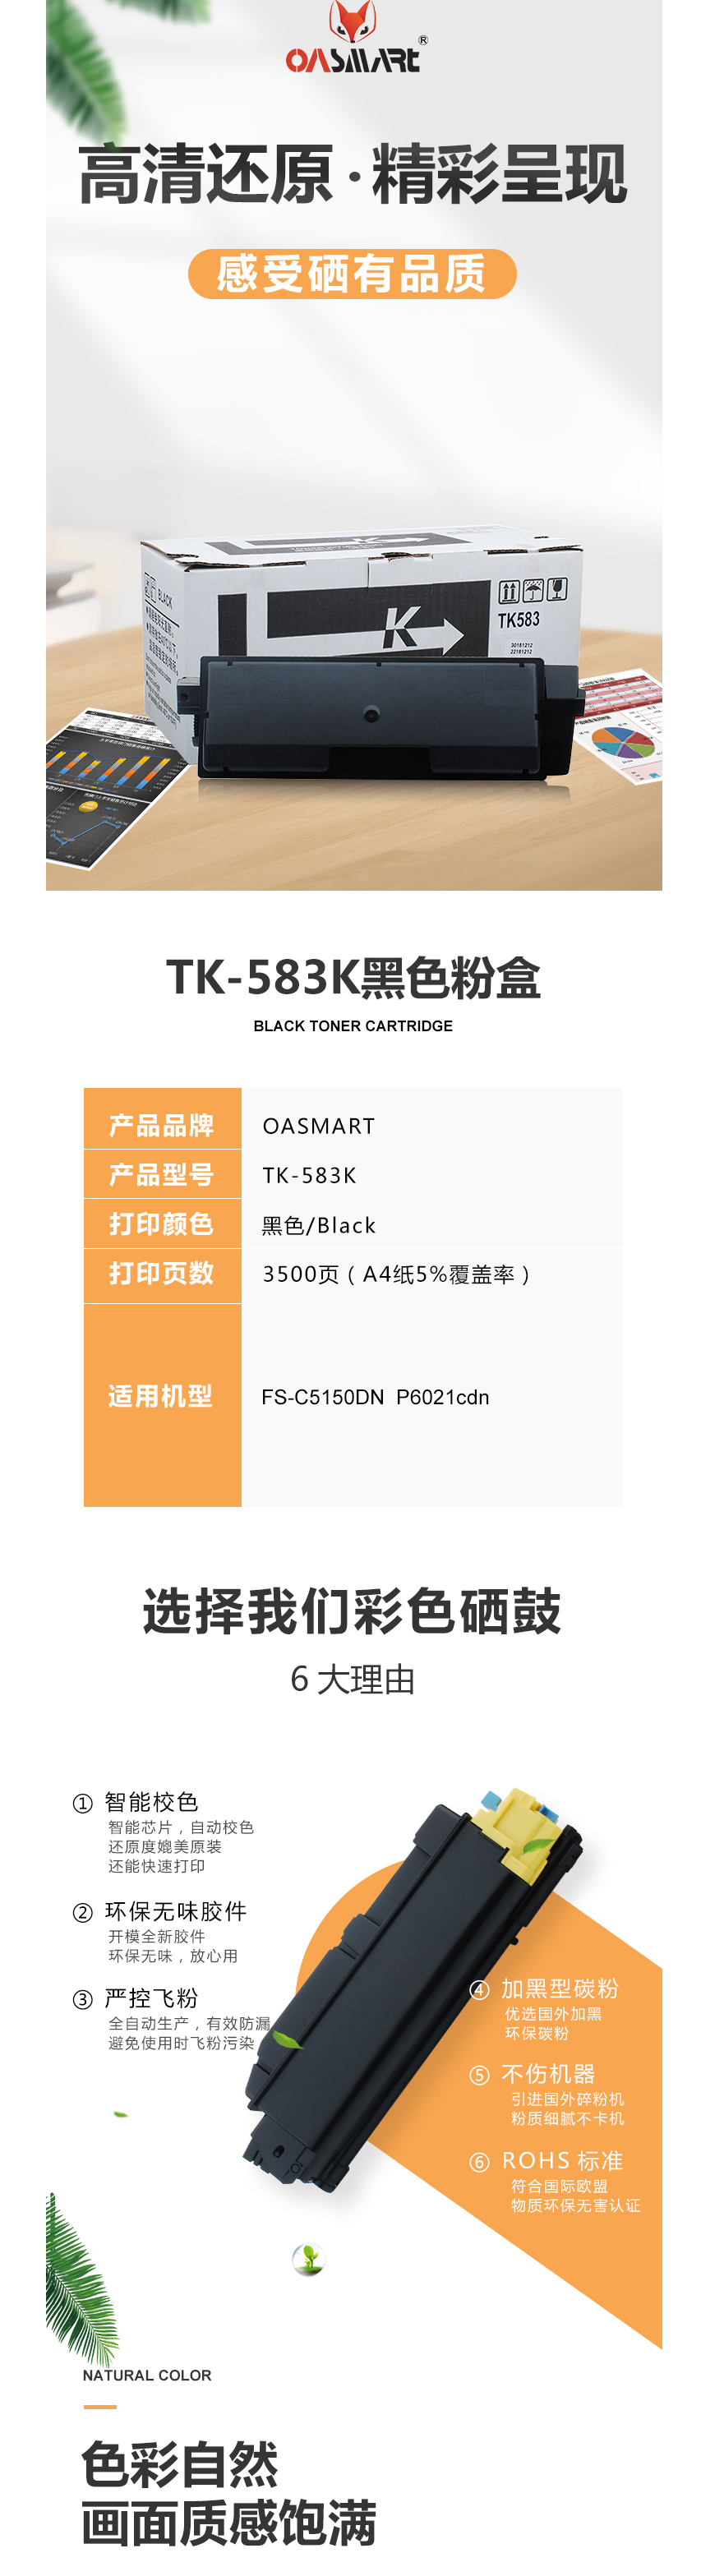 FireShot Capture 604 - 【OASMARTTK-583K】OASMART（欧司特）TK-583K _ - https___item.jd.com_100016360230.html.png